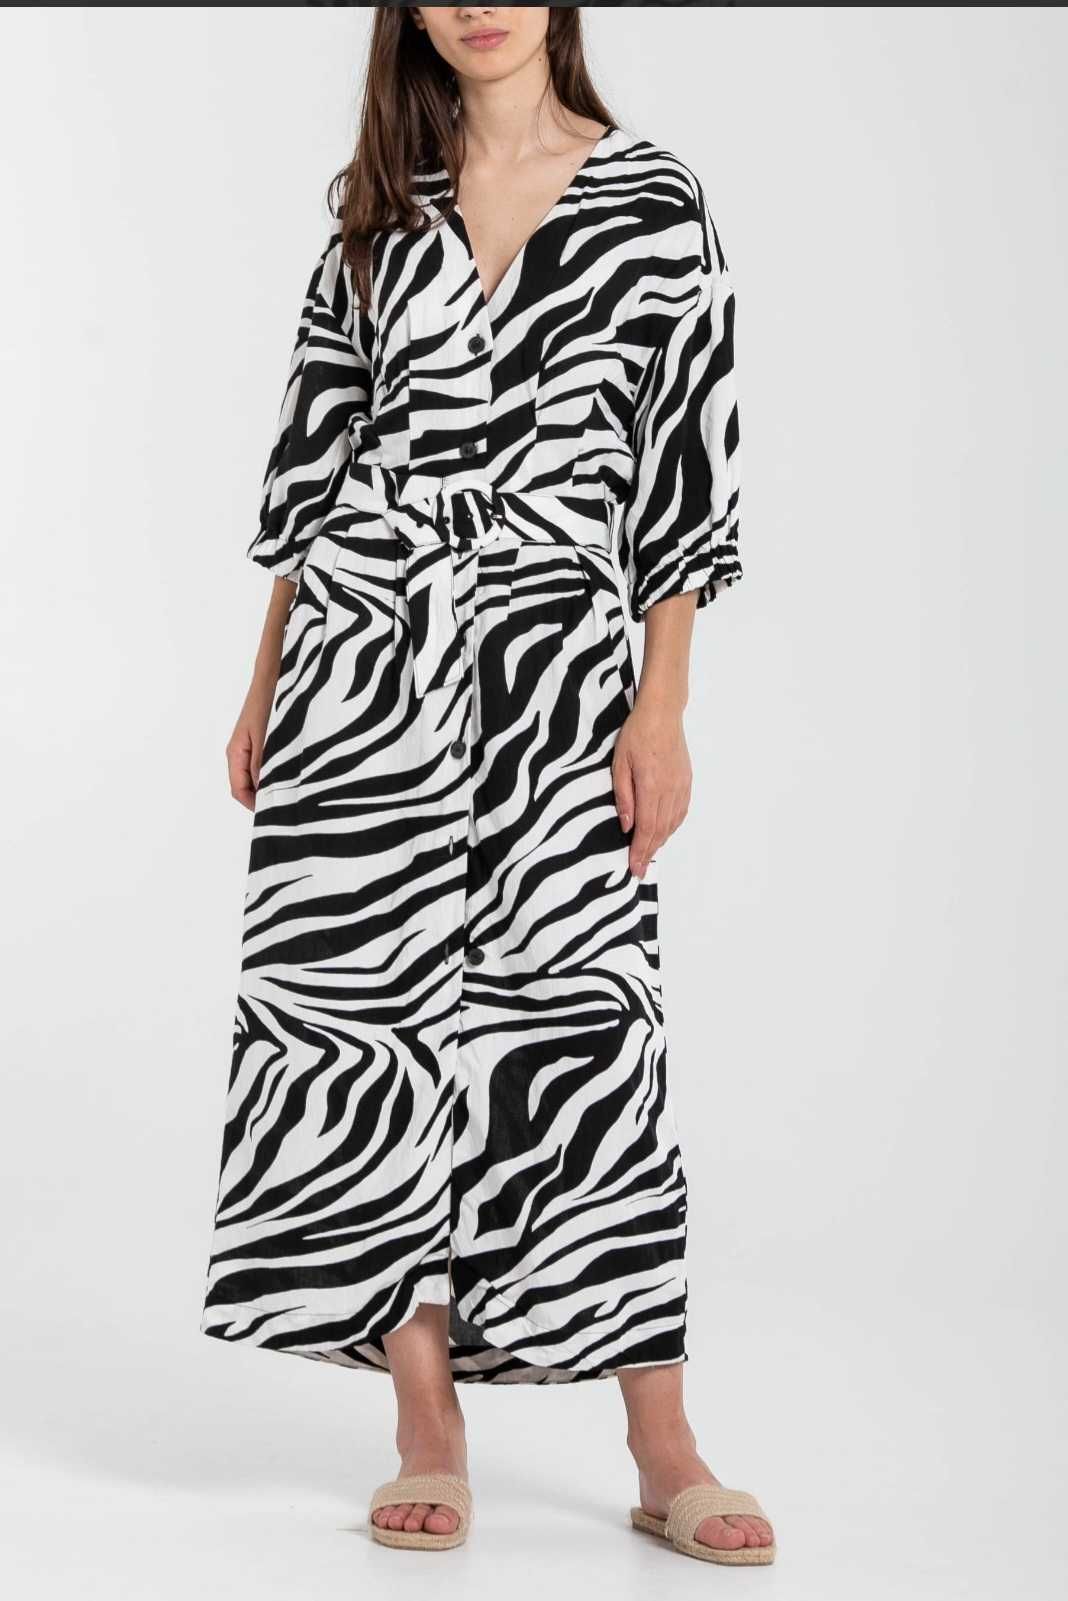 Rochie midi Zara, din in 100%, animal print, cordon, L